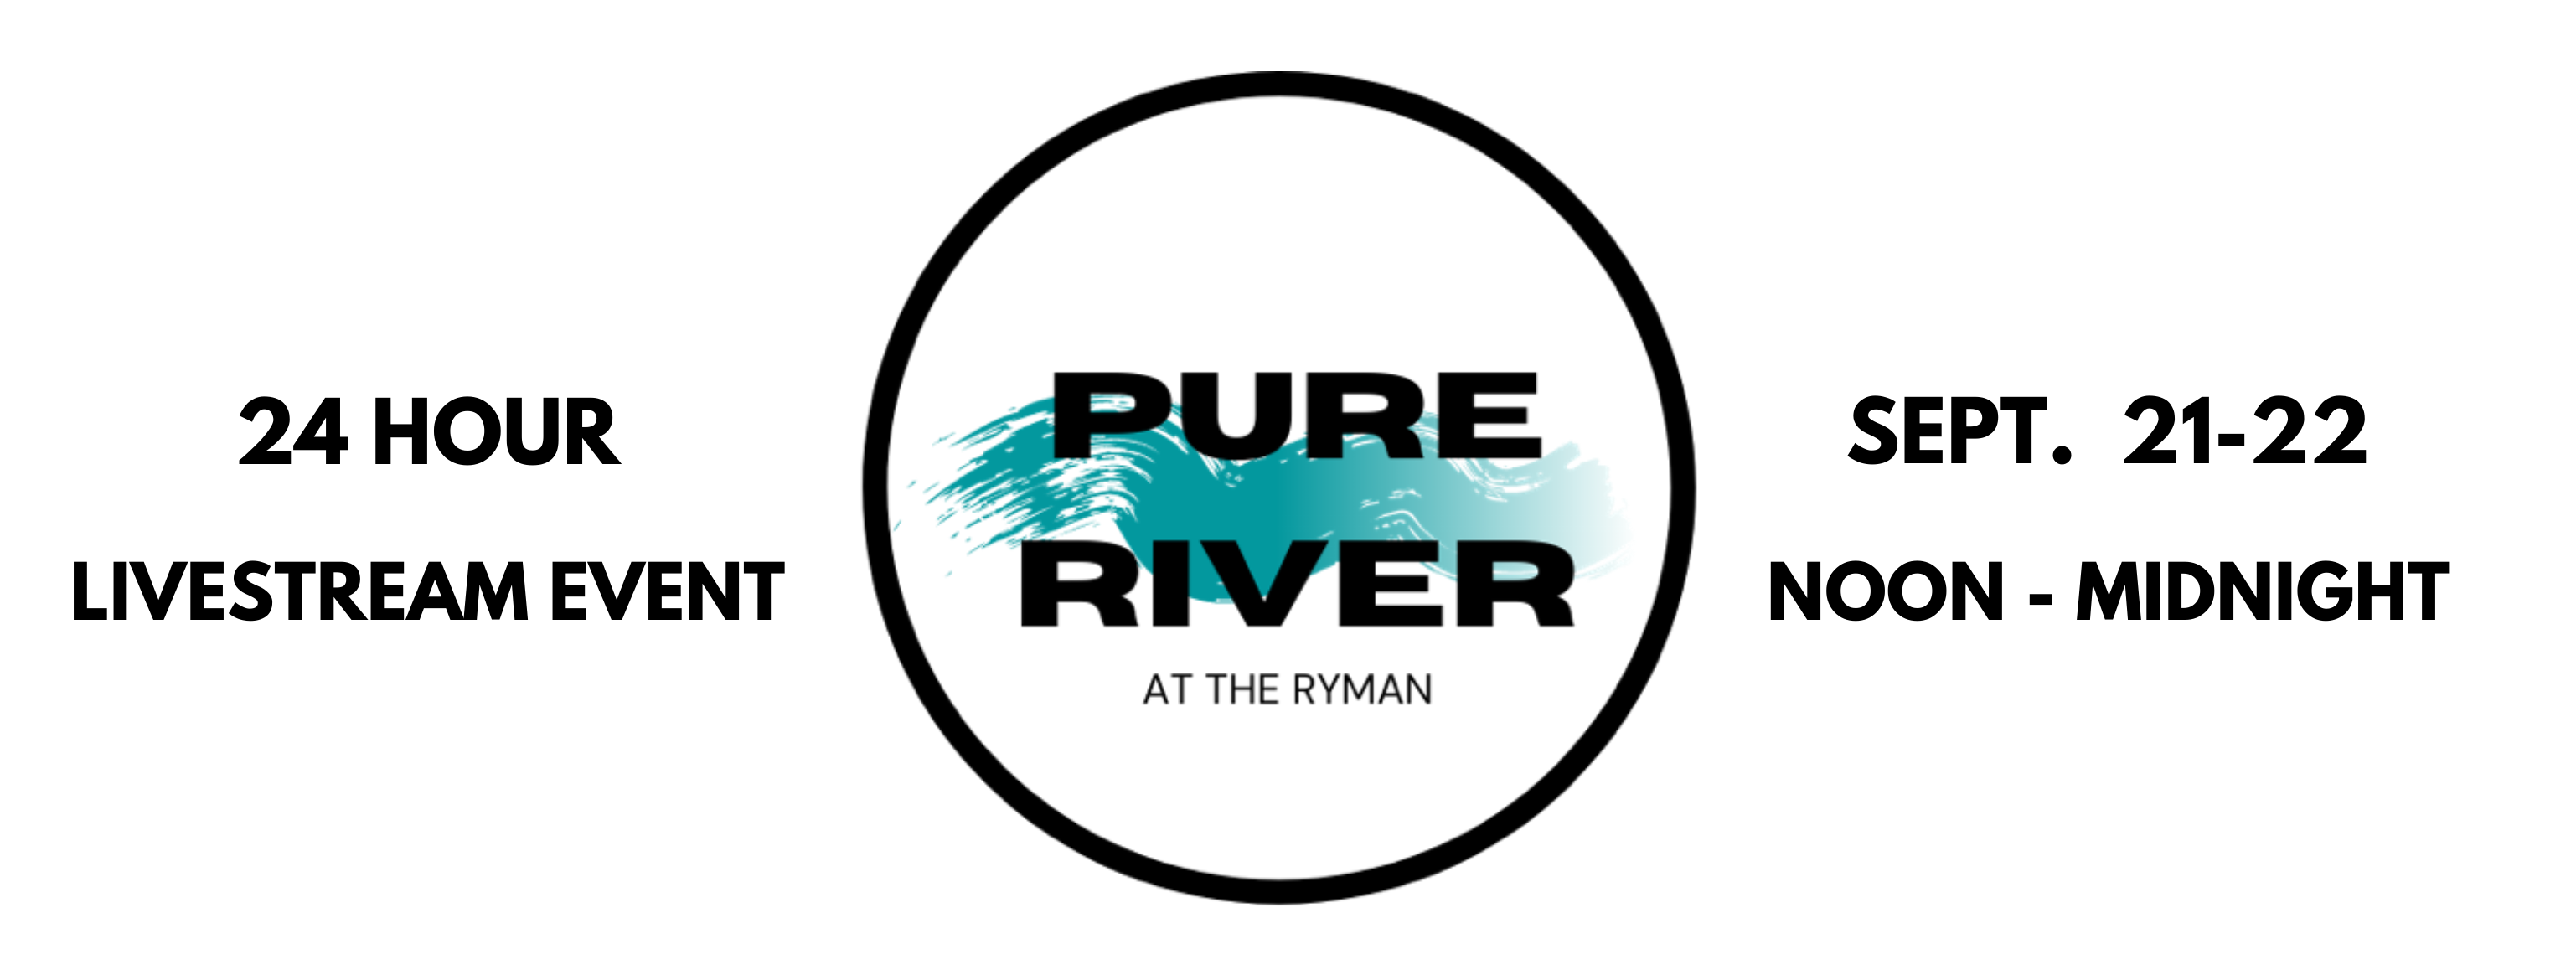 â€œPure River at the Rymanâ€ September 21-22